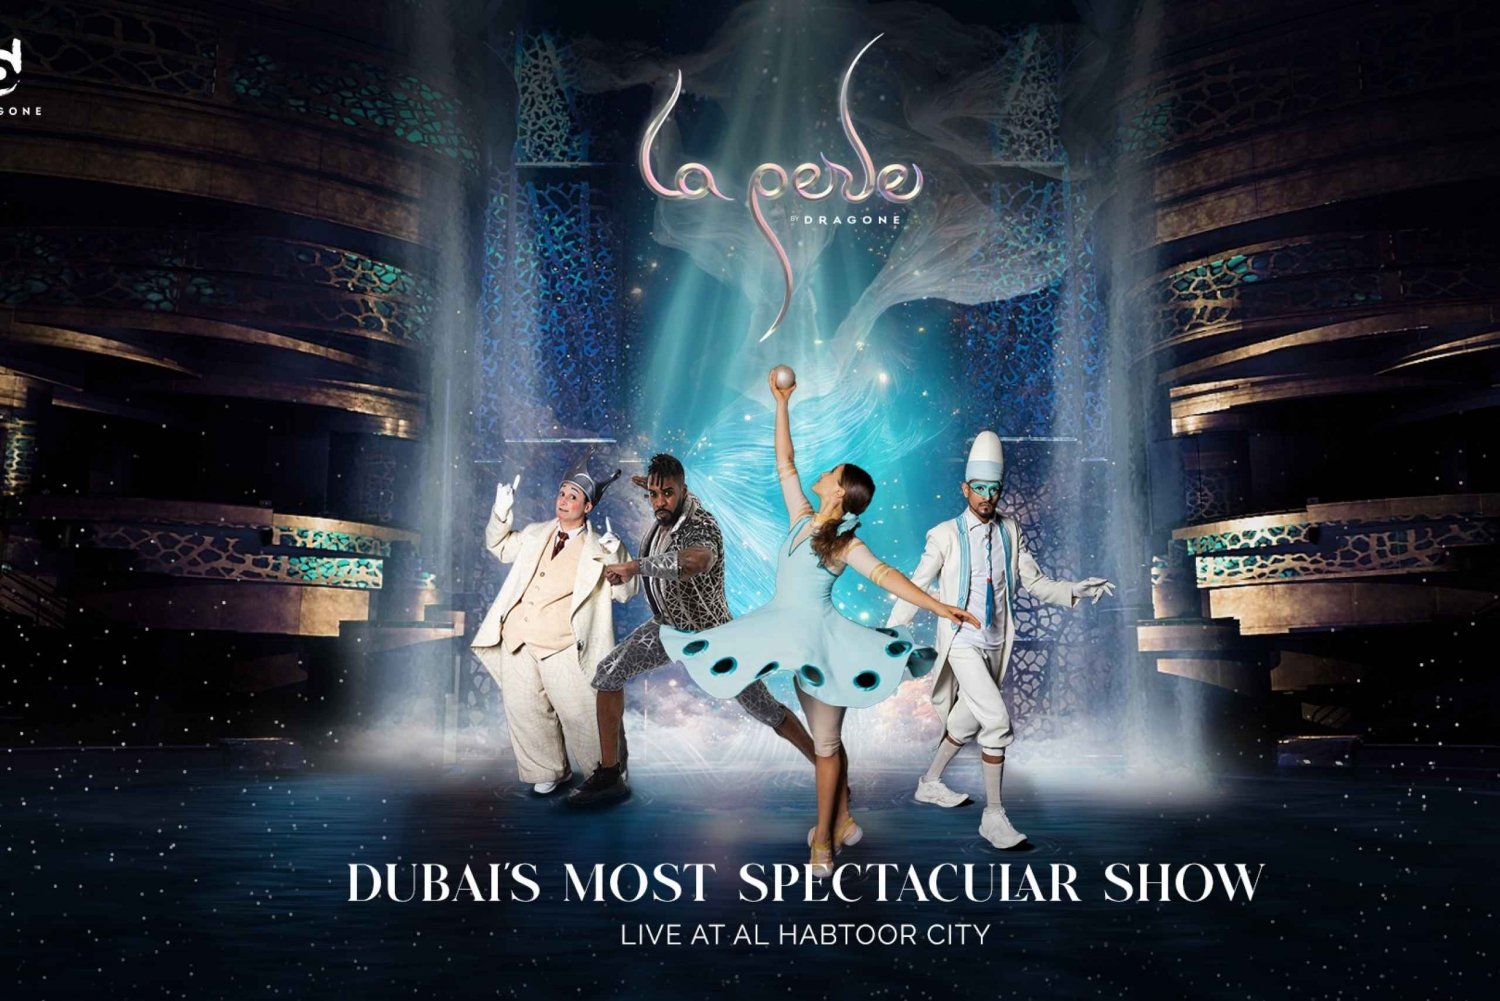 Dubai: kaartjes voor La Perle door Dragone-show